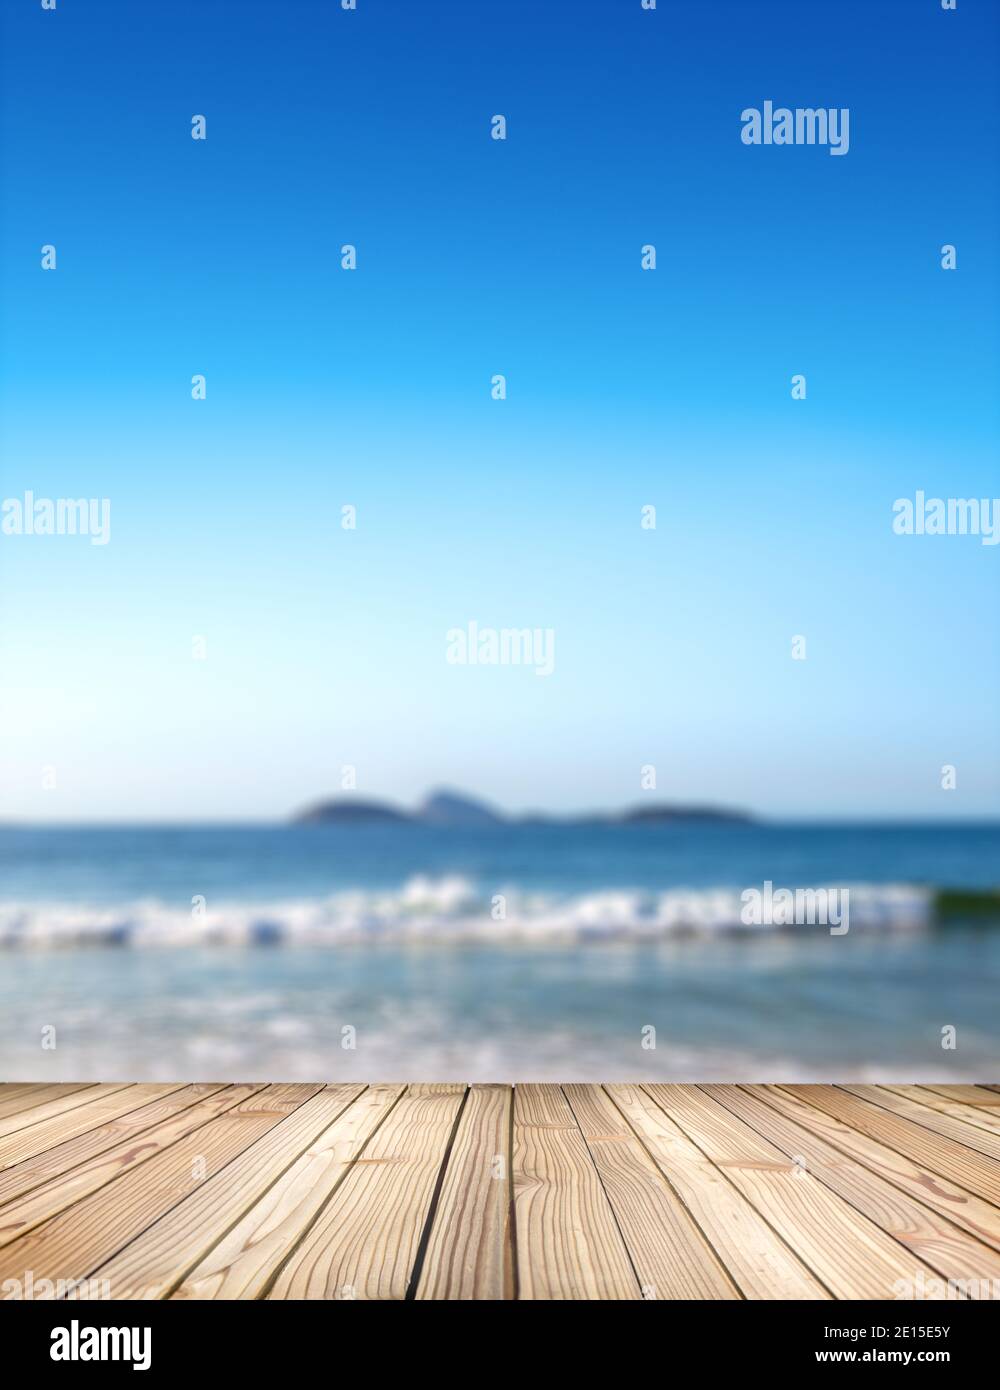 Etapa vacía para productos. Fondo de mar borroso con piso de madera en la terraza del complejo en el primer plano. Imagen de la playa de Ipanema en Río de Janeiro, Brasil. Foto de stock